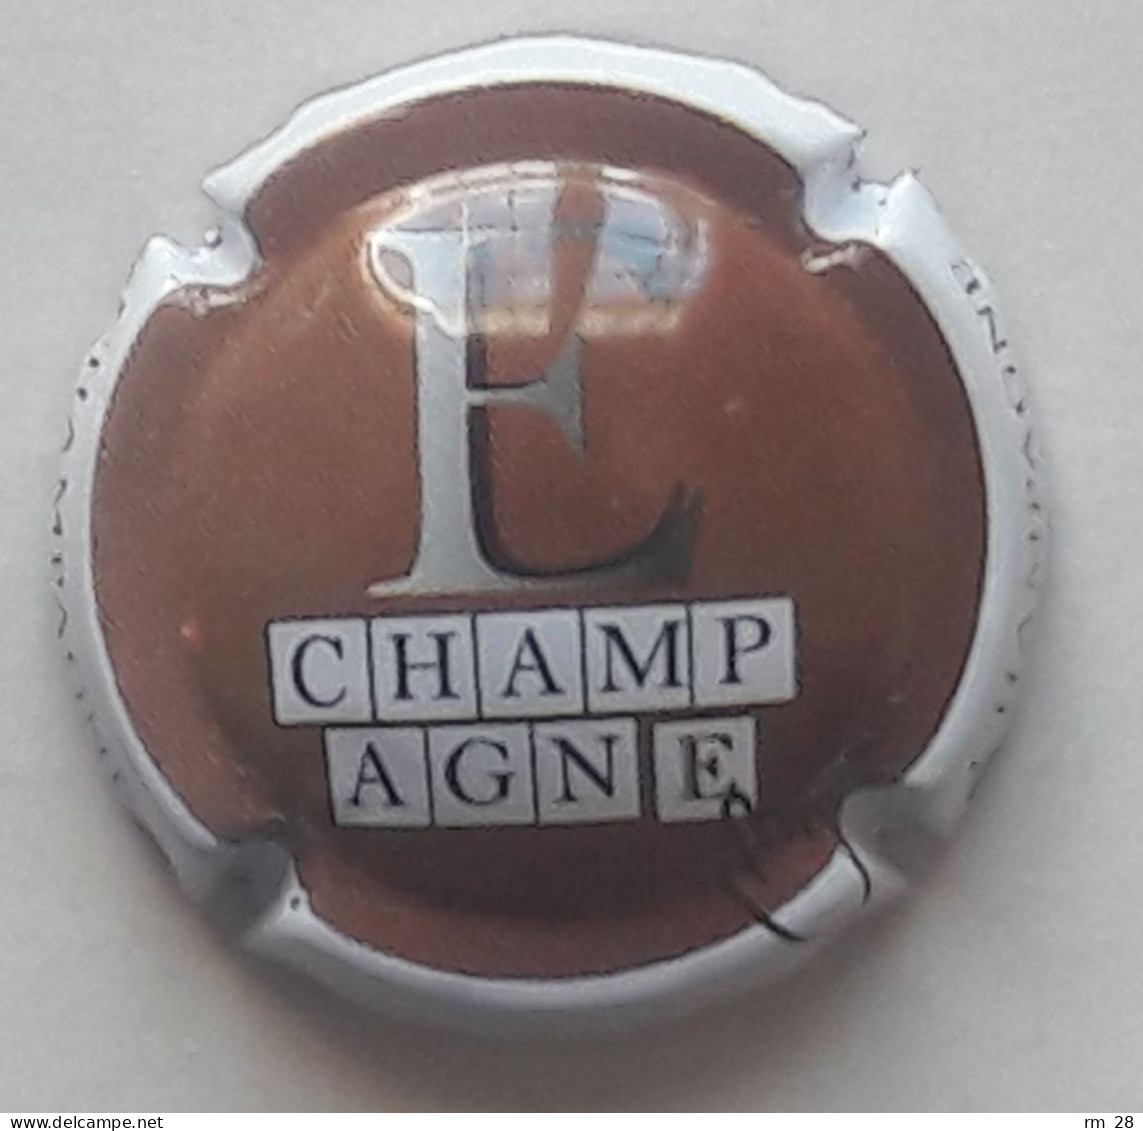 Génériques Puzzle Champagne : 9 capsules n° 897 à 897.h (TBE) série complète